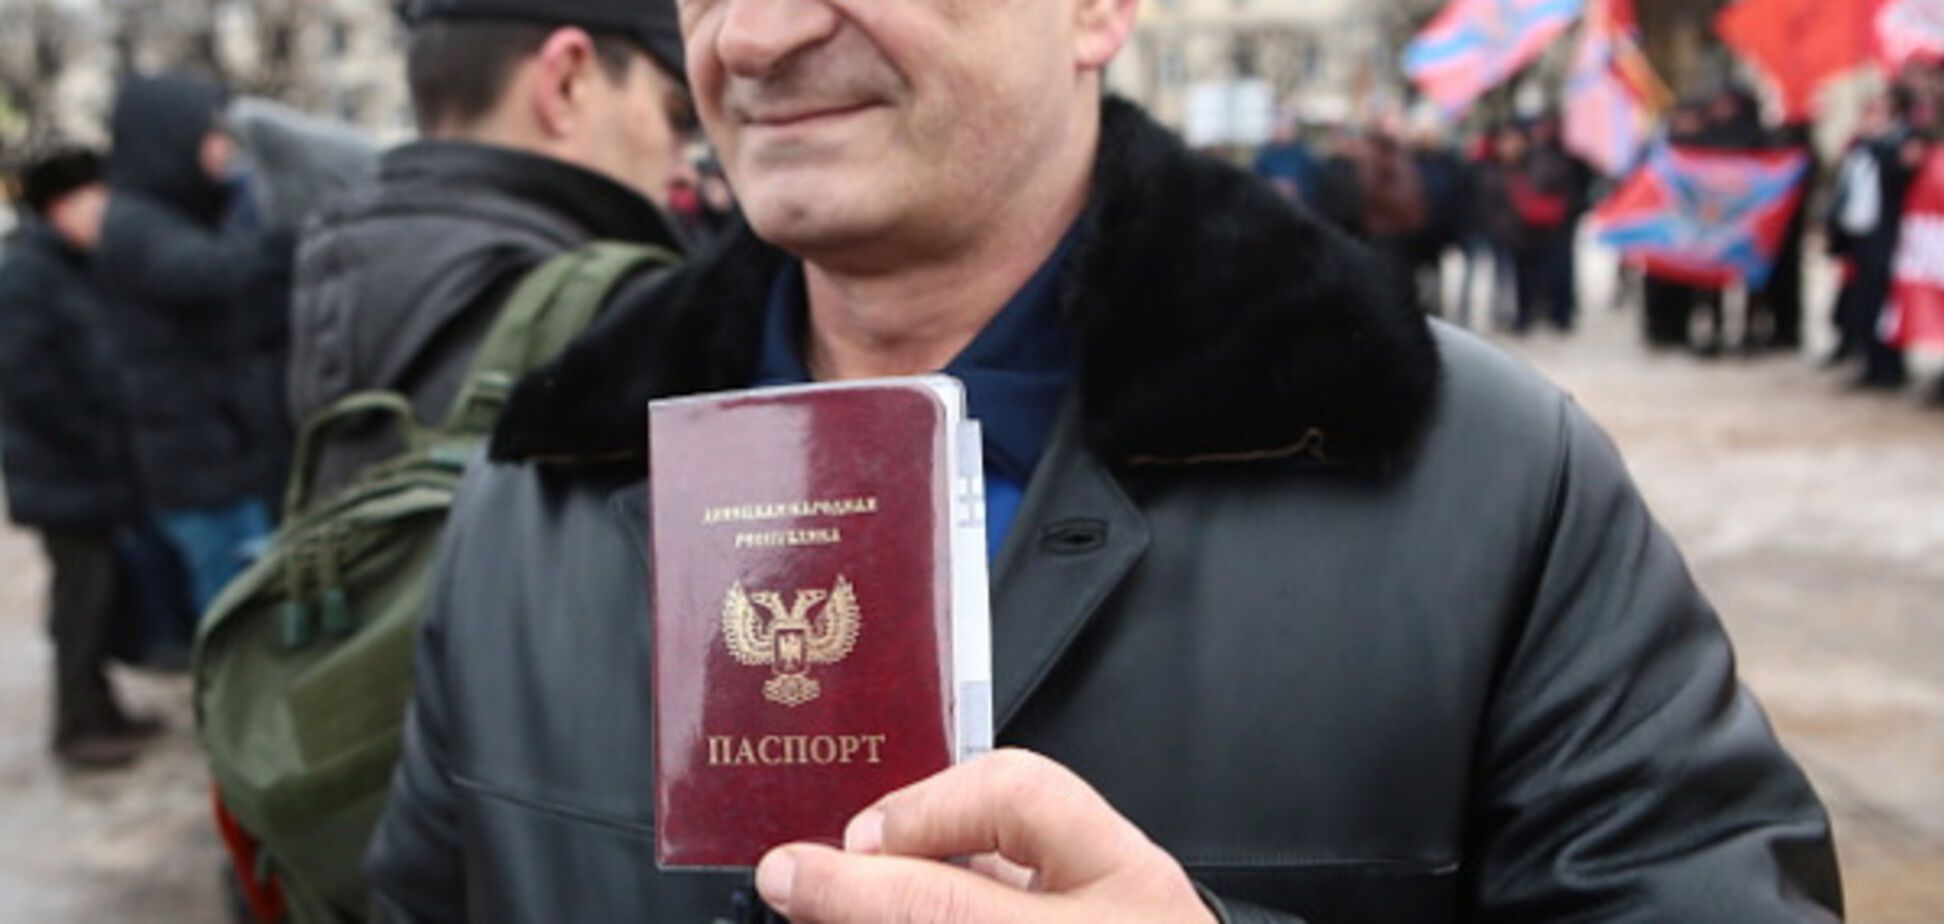 'Шлют на...': российские банки отказываются принимать паспорта 'Л/ДНР'